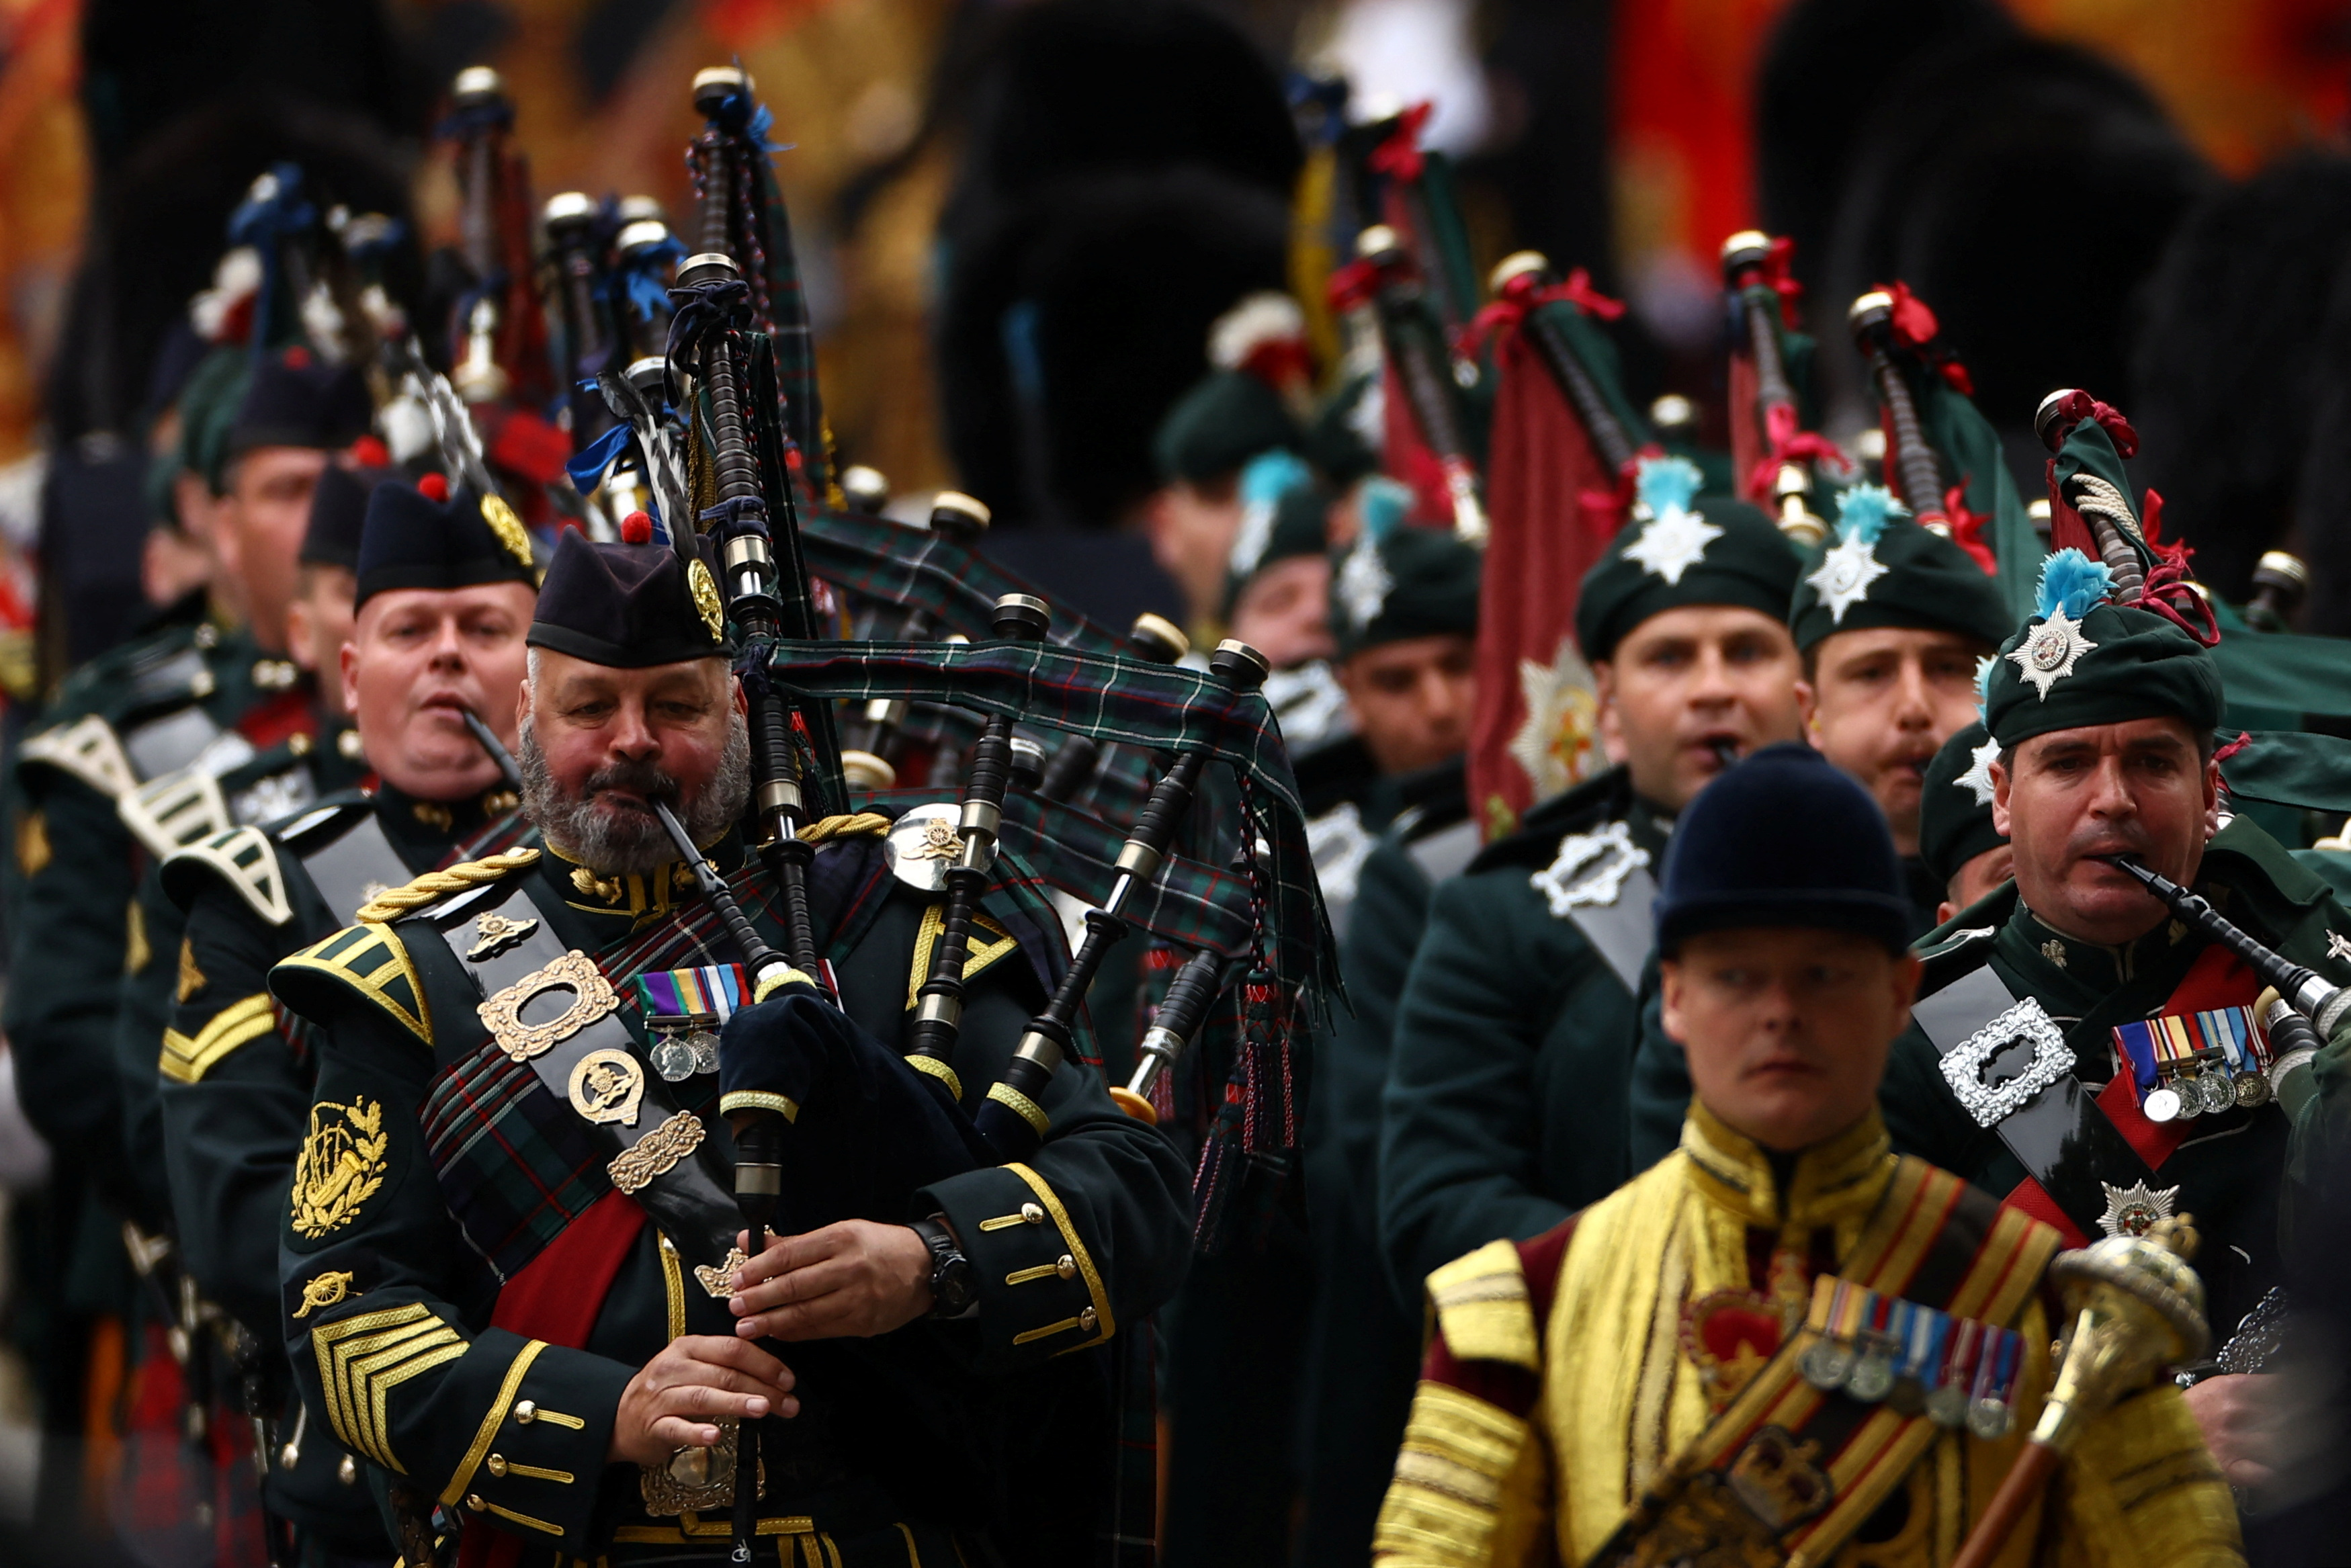 La procesión estuvo integrada por una banda de gaiteros escoceses que tocaban mientras el ataúd de la reina llegaba a Westminster.